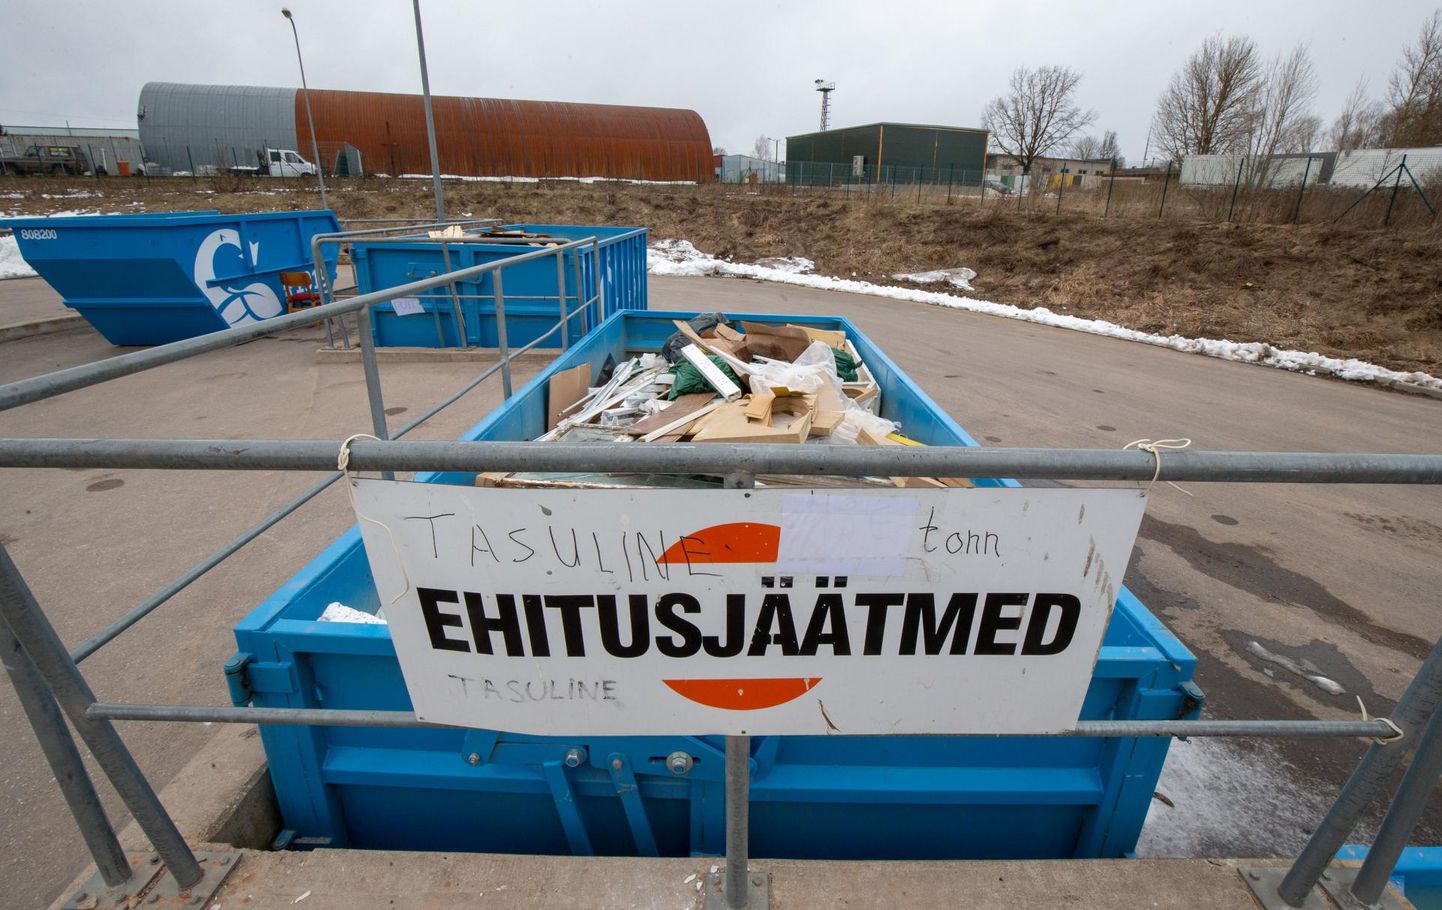 Sel aastal paigaldatakse korteriühistute juurde helesinised Eesti Keskkonnateenuste kirjadega konteinerid. Pilt on illustreeriv.